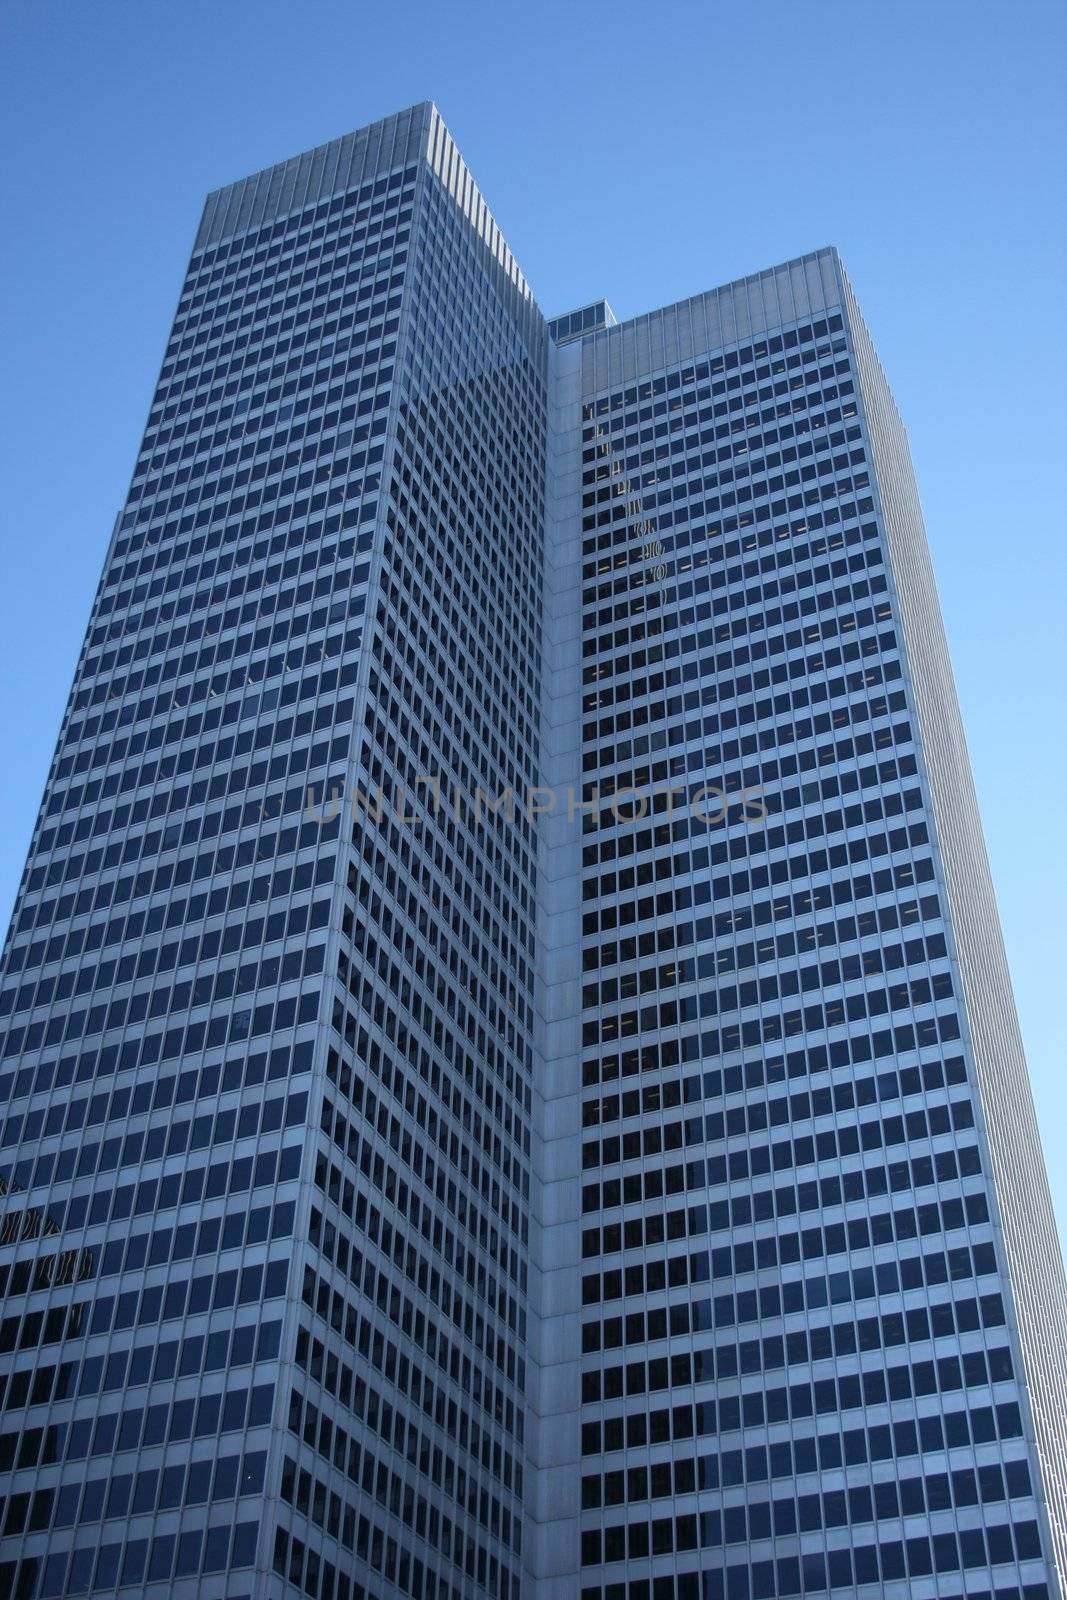 Corporate tower by anikasalsera